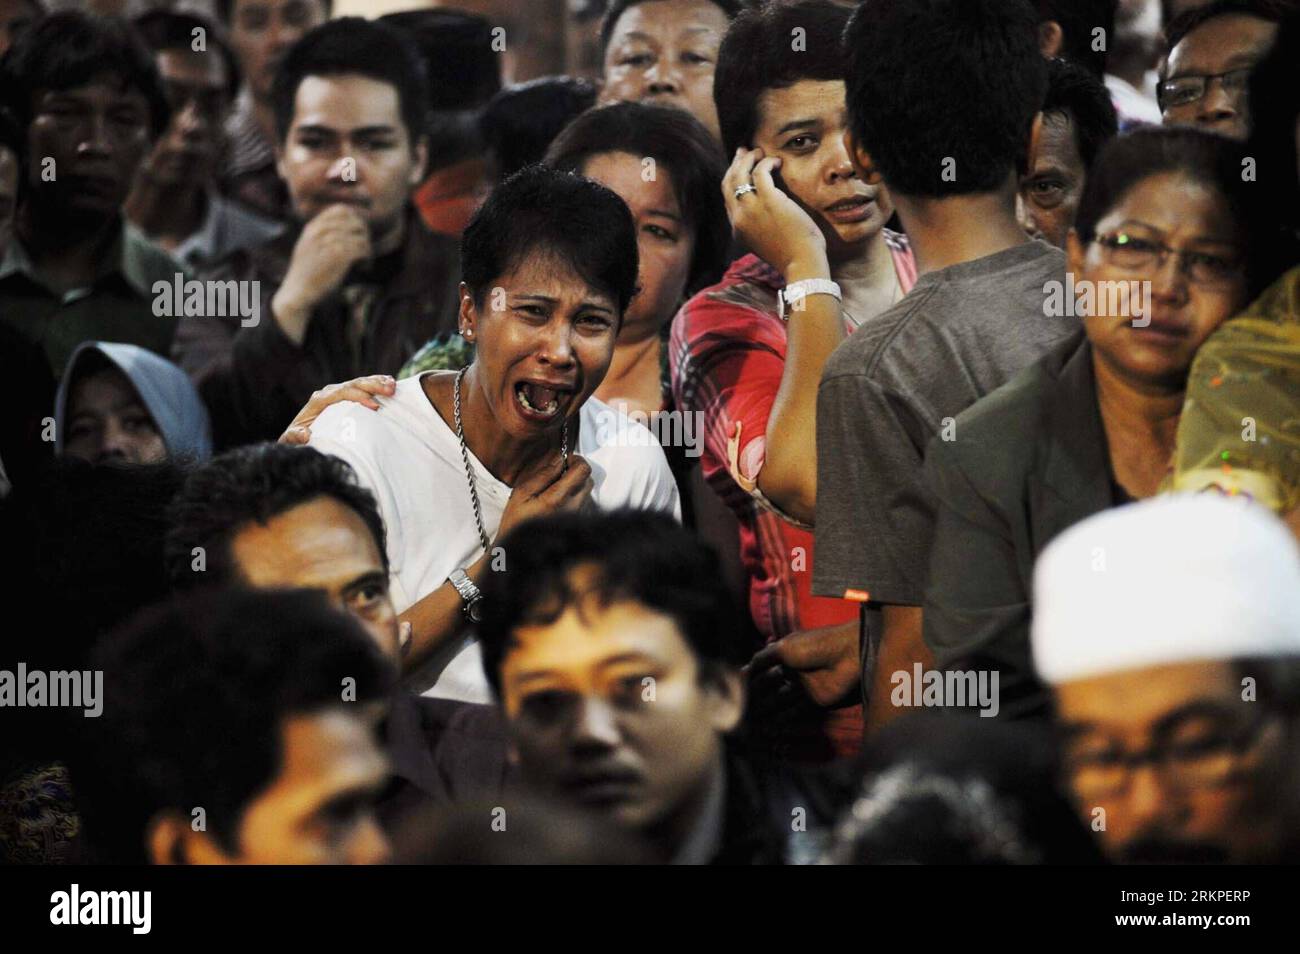 Bildnummer : 57978367 Datum : 11.05.2012 Copyright : imago/Xinhua (120511) -- JAKARTA, 11 mai 2012 (Xinhua) -- les proches des victimes de Sukhoi Super jet-100 réagissent en regardant les nouvelles de la télévision locale sur les derniers progrès des recherches, à l'aéroport Halim Perdana Kusuma de Jakarta, Indonésie, le 11 mai 2012. Les sauveteurs indonésiens ont déclaré vendredi avoir récupéré 12 corps près de l’épave d’un super jet-100 de fabrication russe Sukhoi qui s’est écrasé mercredi dans la pente abrupte du mont Salak à Bogor, Java occidental. (Xinhua/Agung Kuncahya B.) (zw) INDONÉSIE-RUSSIE-AVION-CRASH-AFTERMATH PUBLICATIONxNOTxINxCHN G Banque D'Images